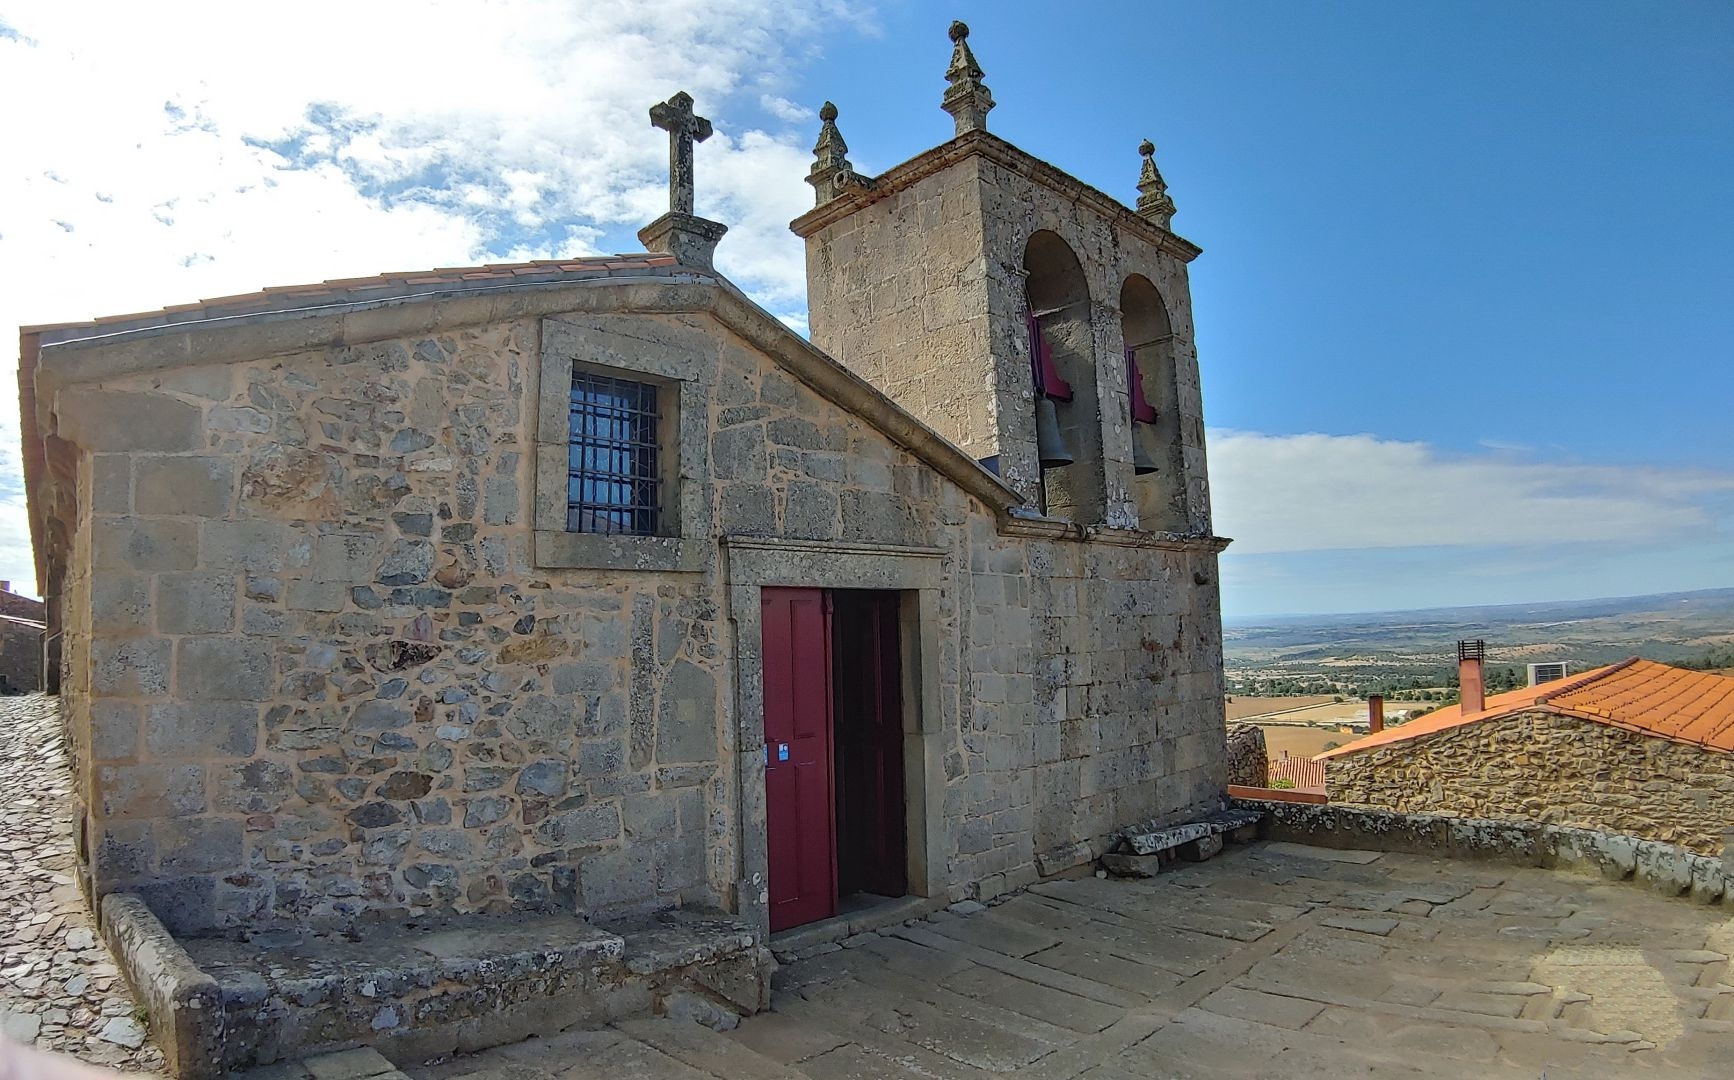 CASTELO RODRIGO - die kleine Kirche "Nossa Senhora de Rocamador" wurde im 13. Jhdt. erbaut